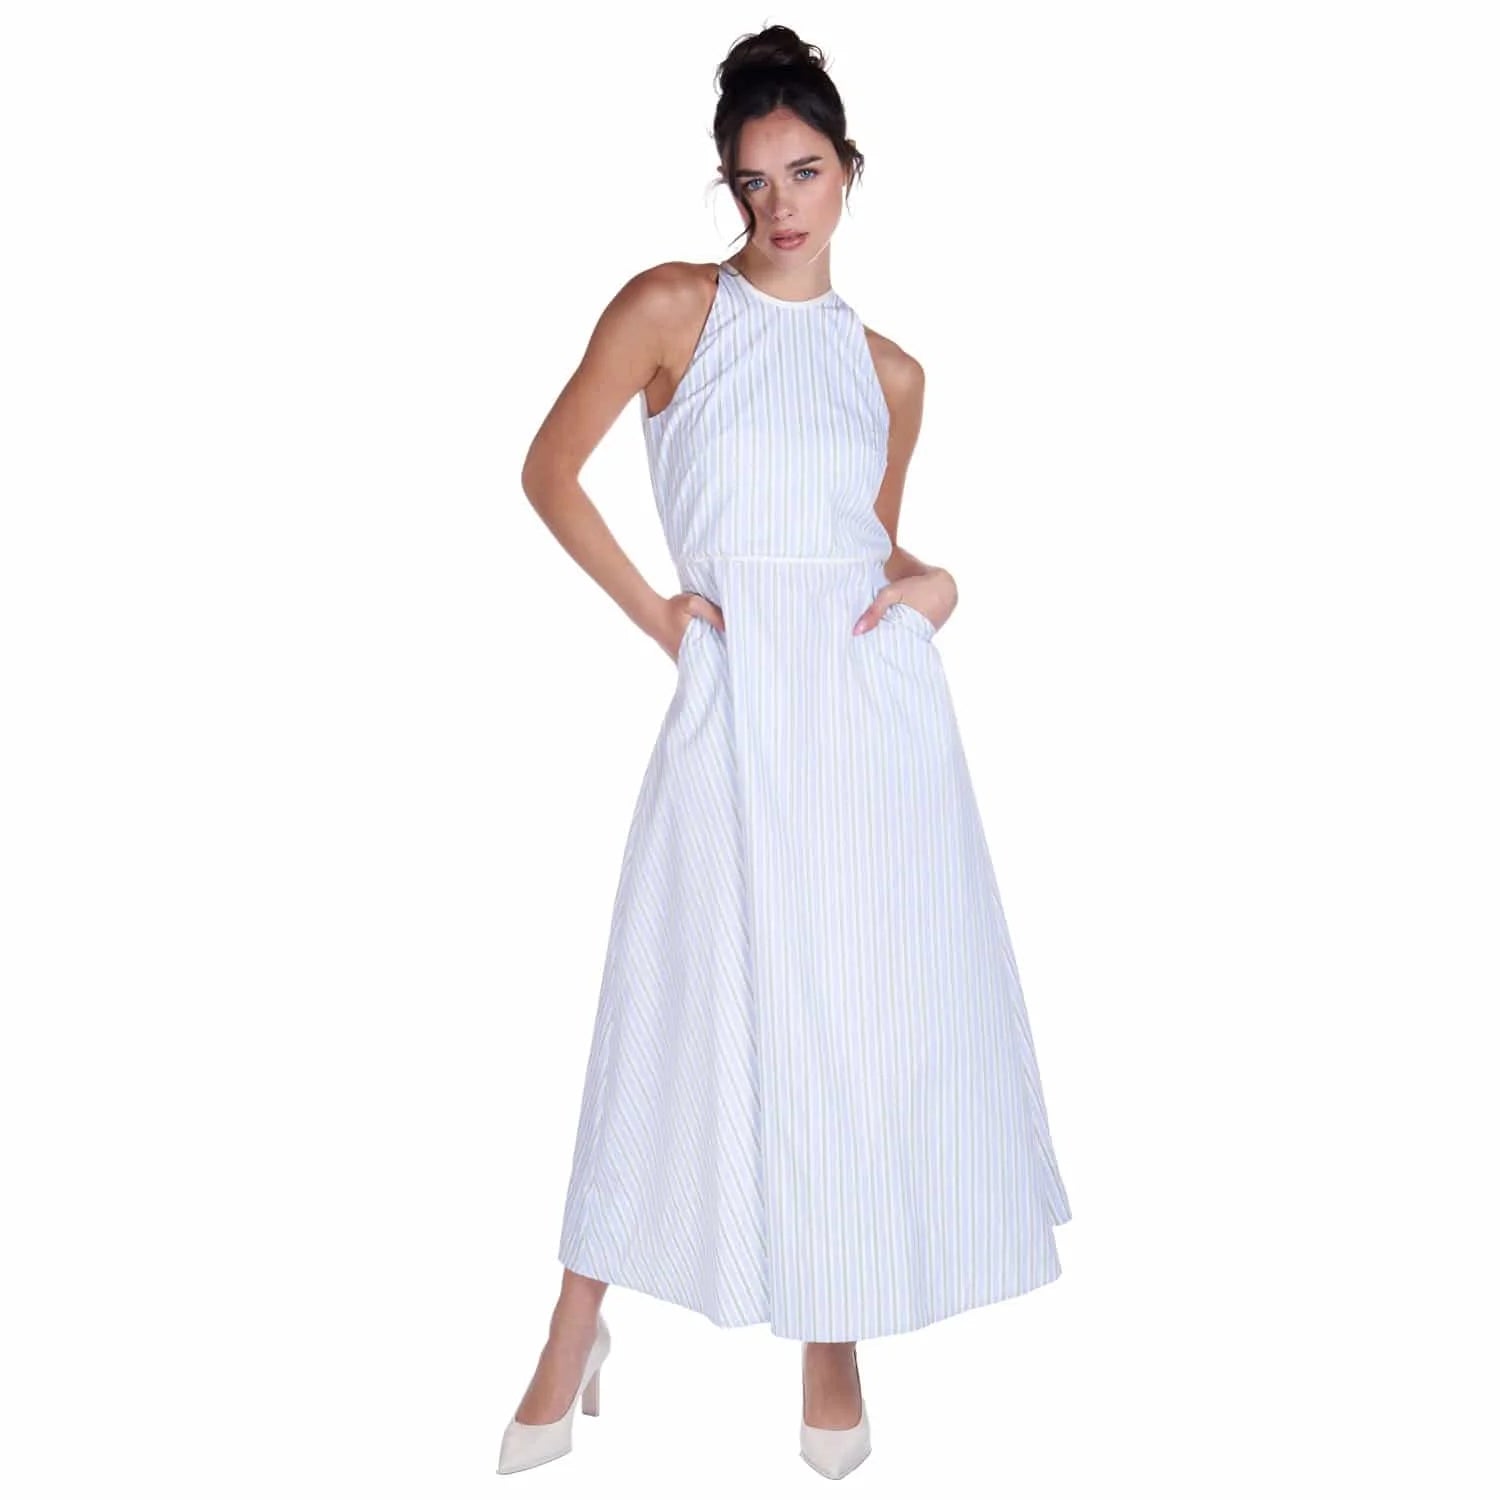 Striped cotton dress - Dress